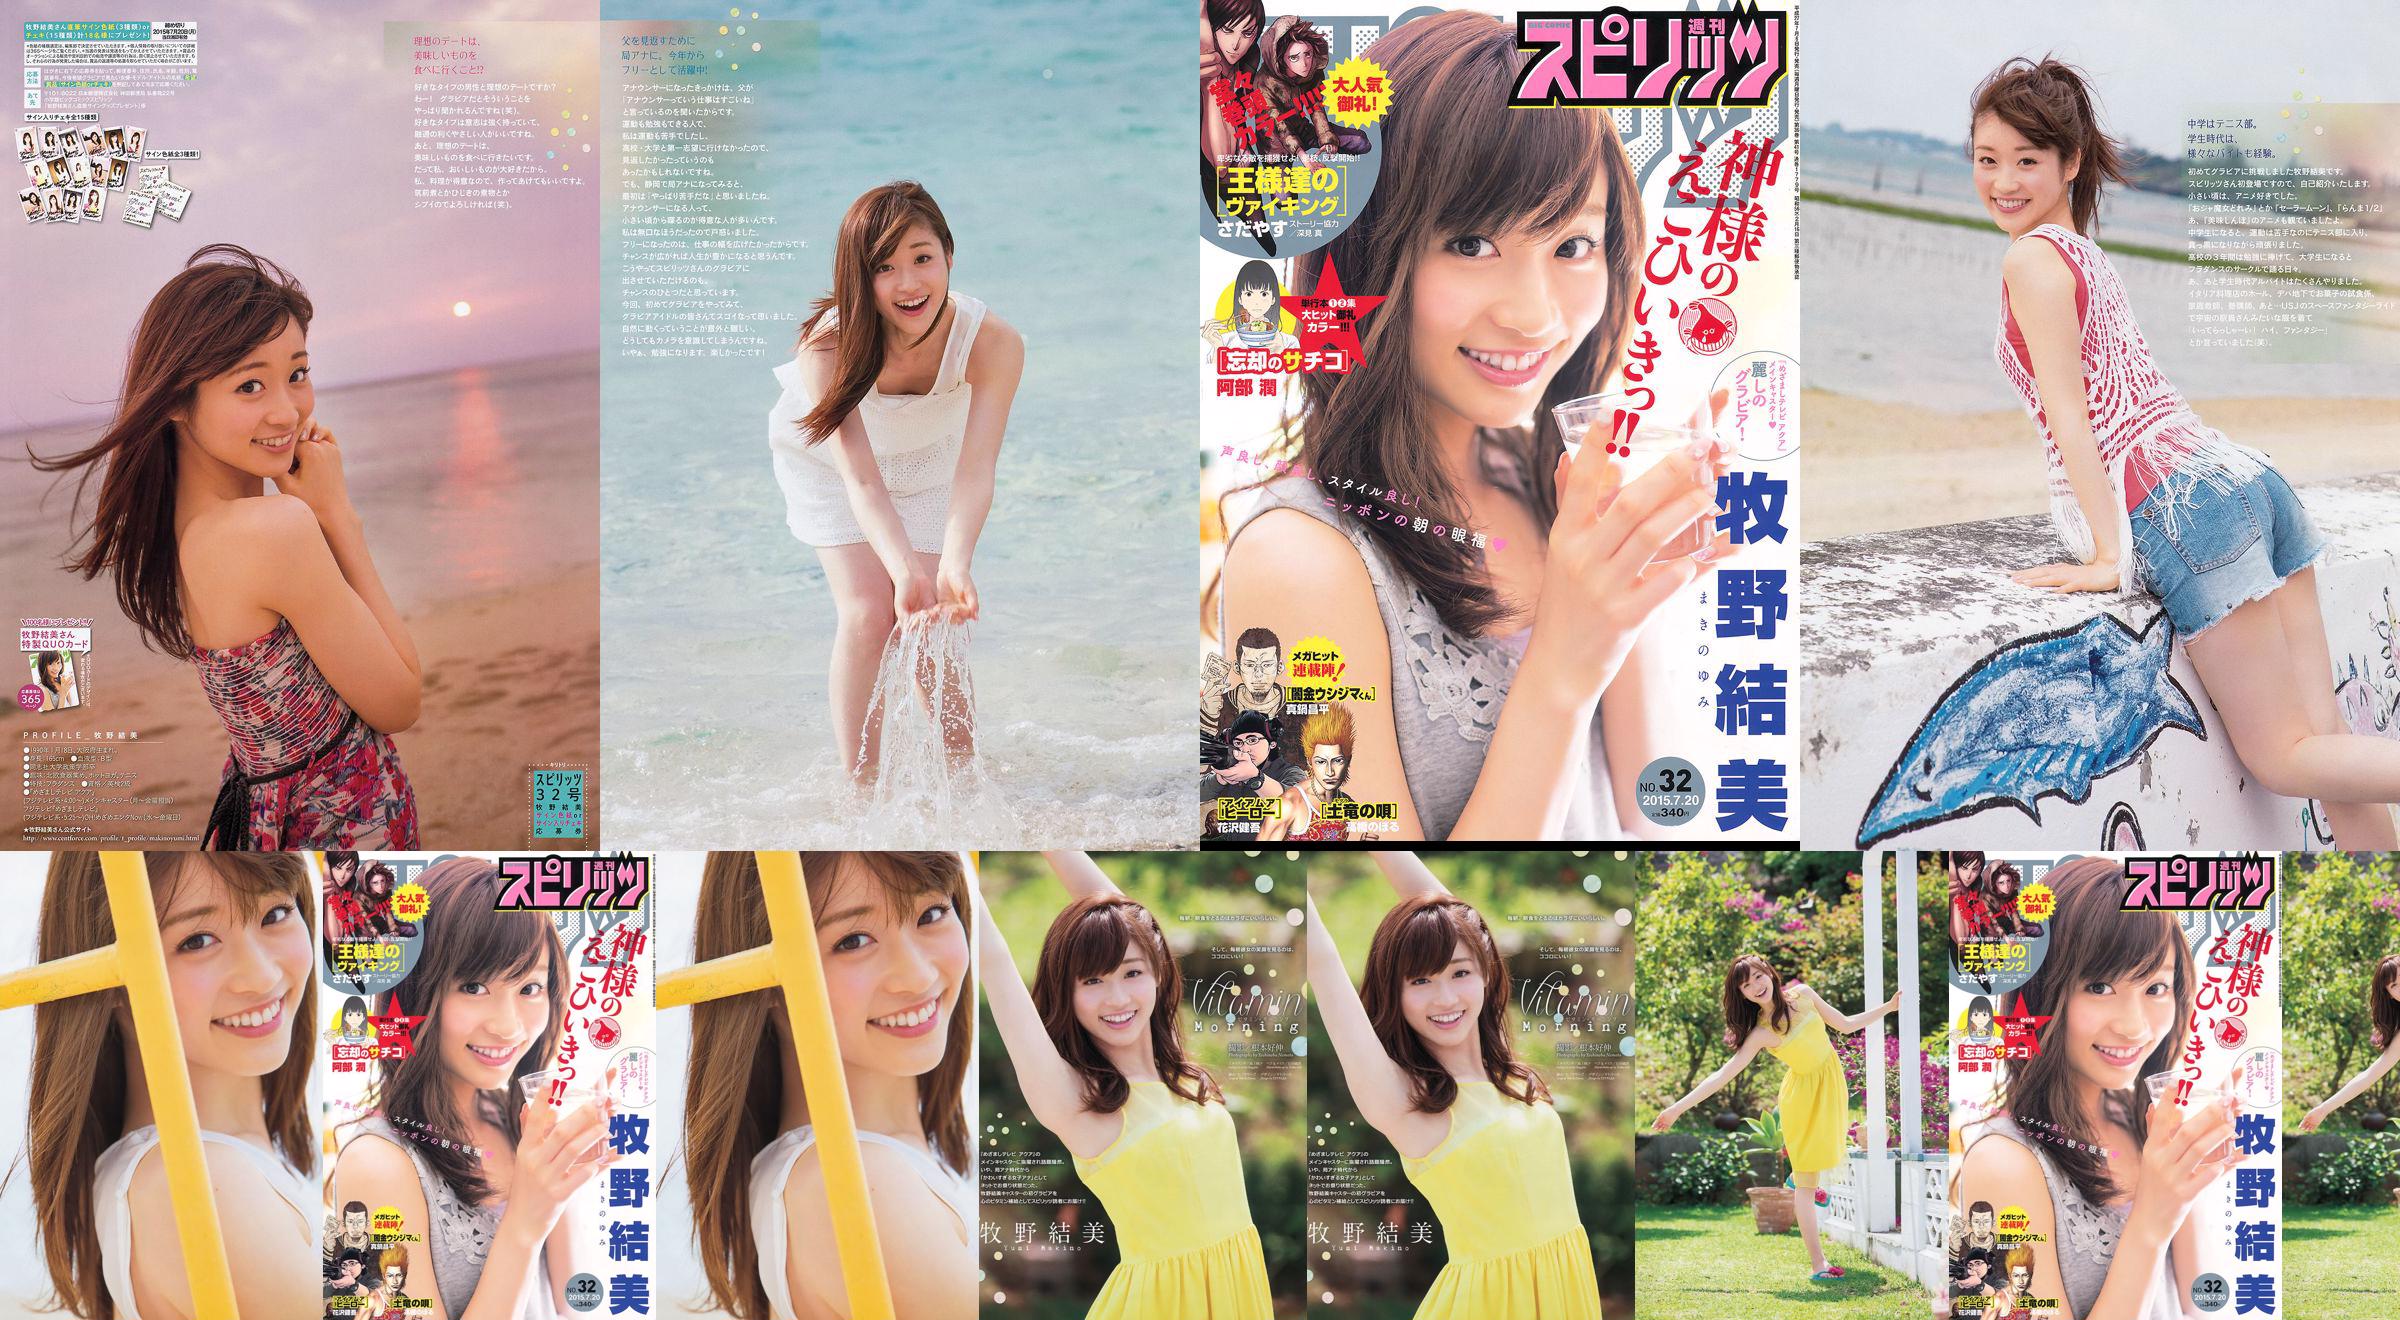 [Weekly Big Comic Spirits] Yumi Makino 2015 No.32 Photo Magazine No.47a6fa Página 1